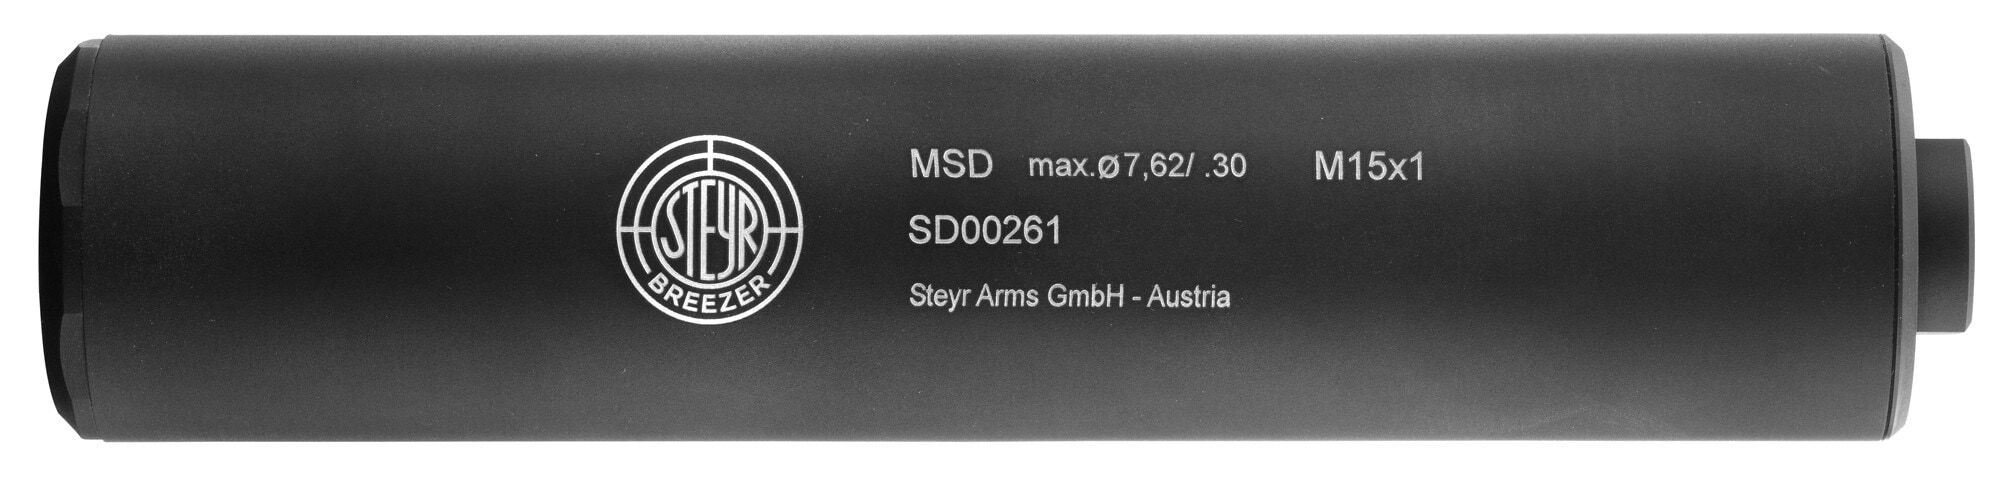 PSB00220-3 Modérateur de son Steyr BREEZER MSD